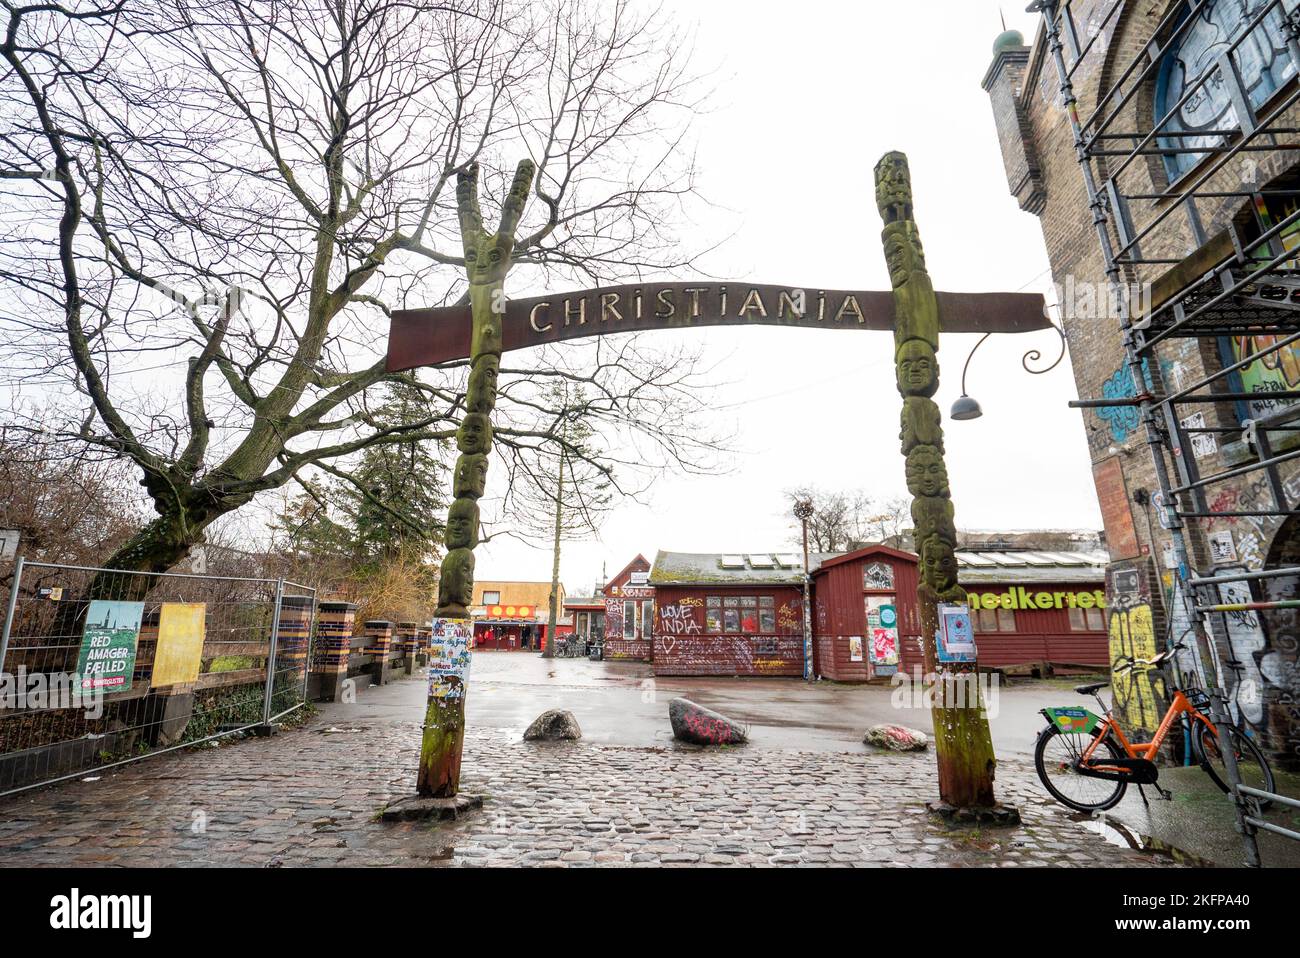 Der Eingang nach Christiania freetown, Kopenhagen, Dänemark. Freetown Christiania- eine absichtliche Gemeinschaft, Kommune und Mikronation in Christianshavn. Stockfoto